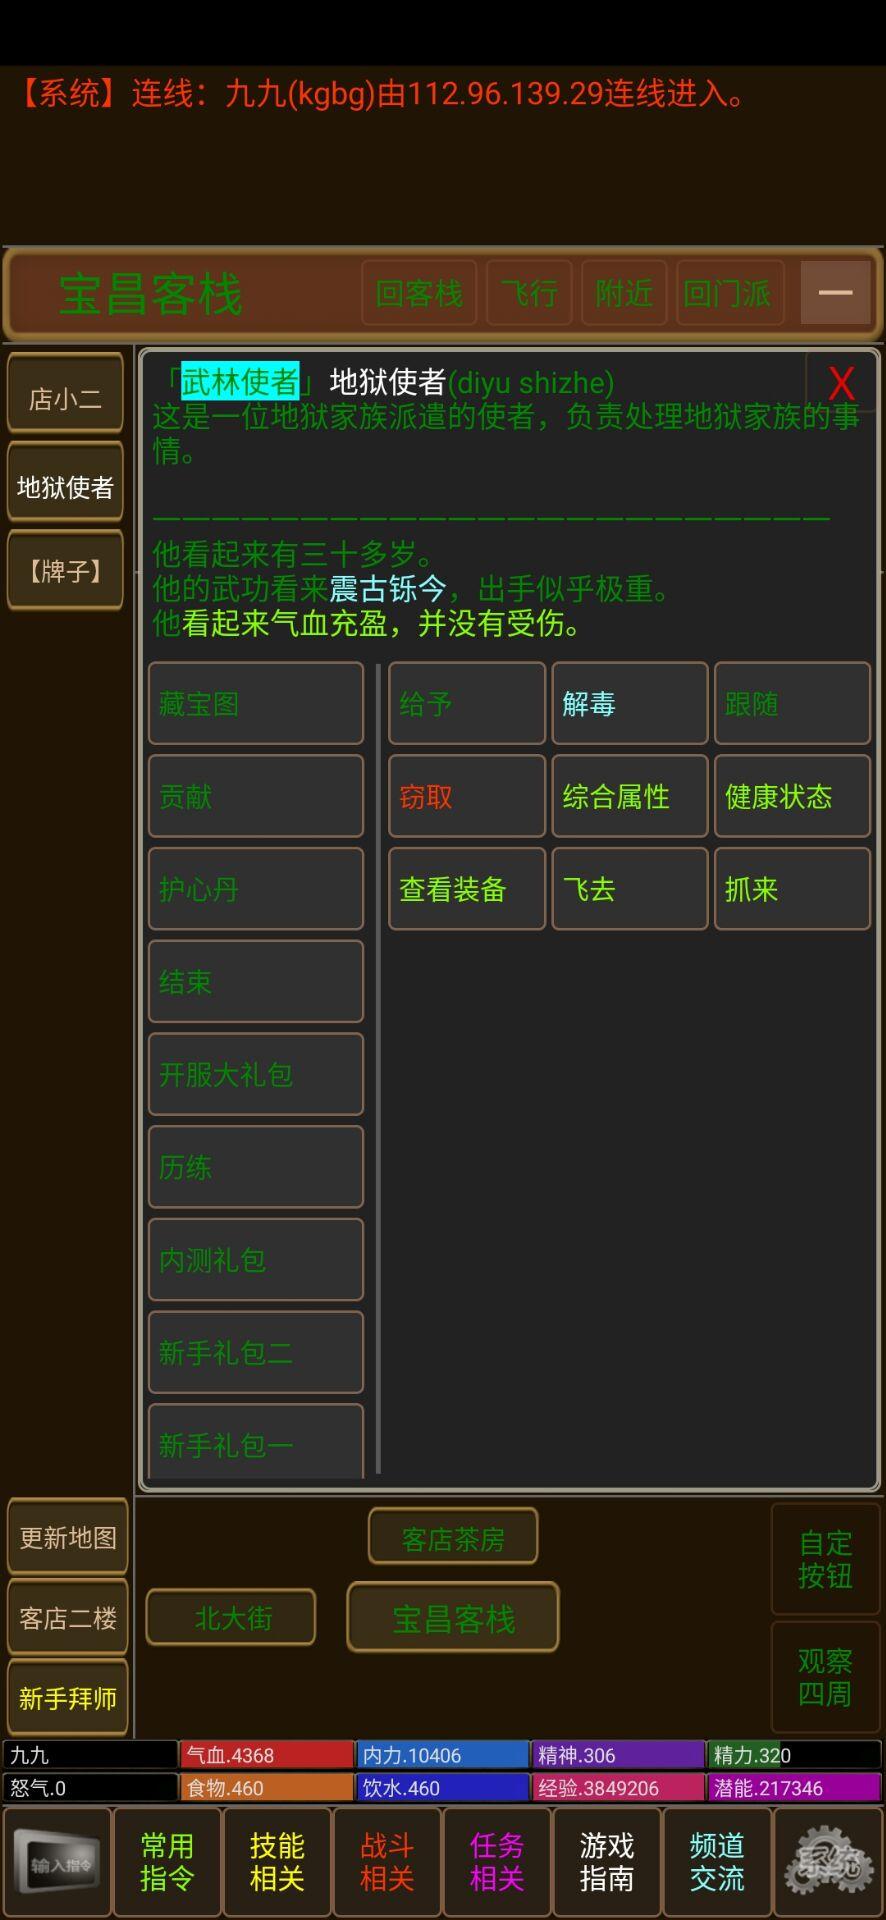 Screenshot 1 of Lingfeng-Tal-Schlamm 1.0